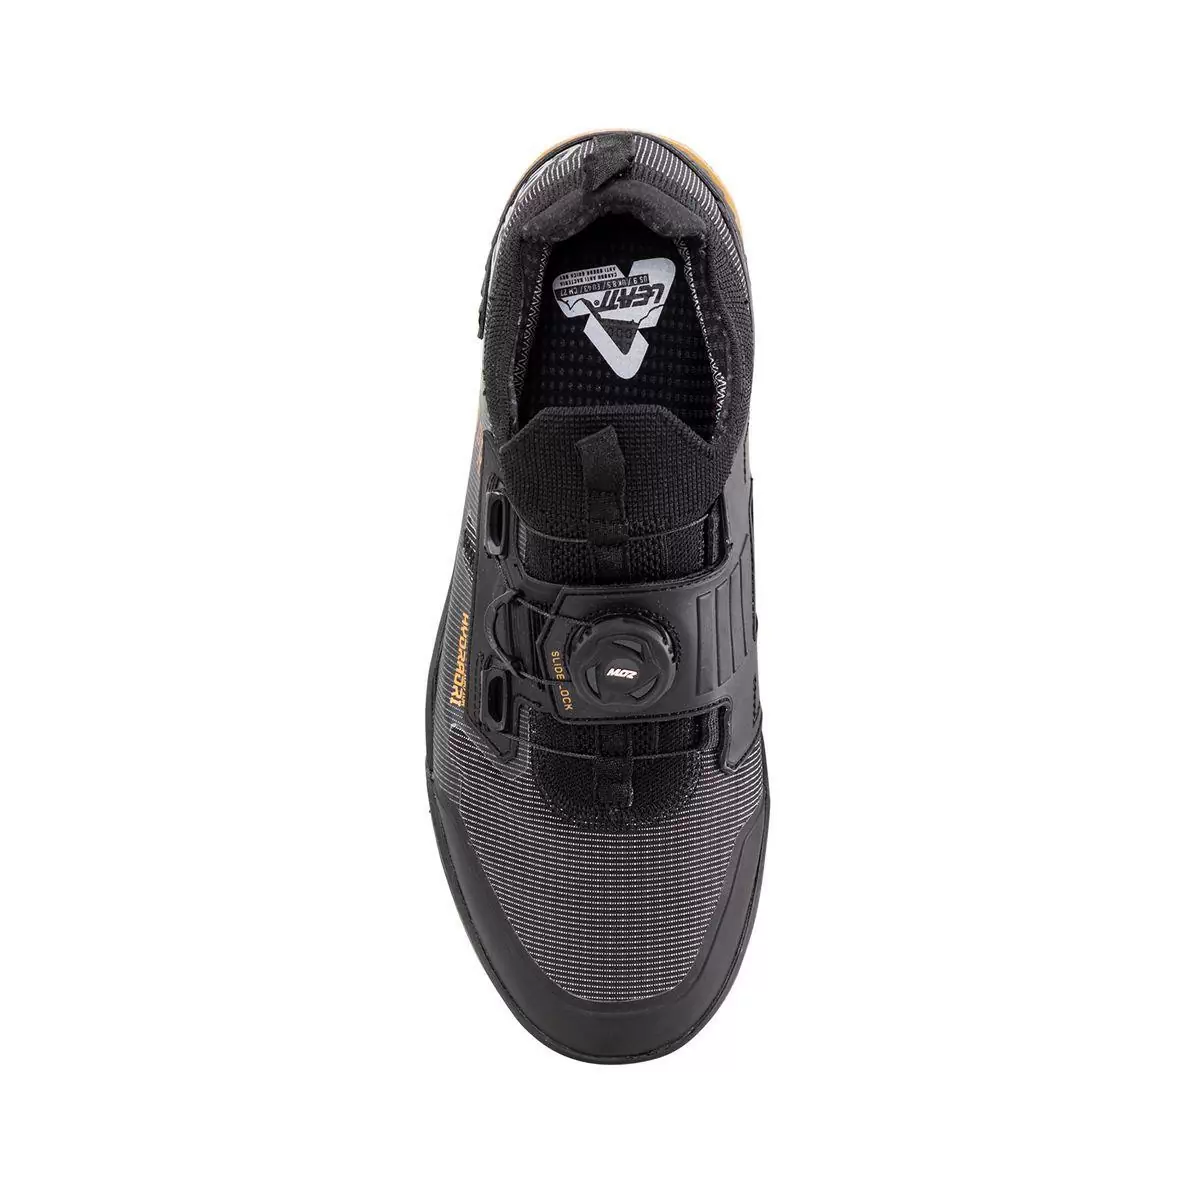 Chaussures VTT imperméables HydraDri ProClip 5.0 noir taille 38,5 #2